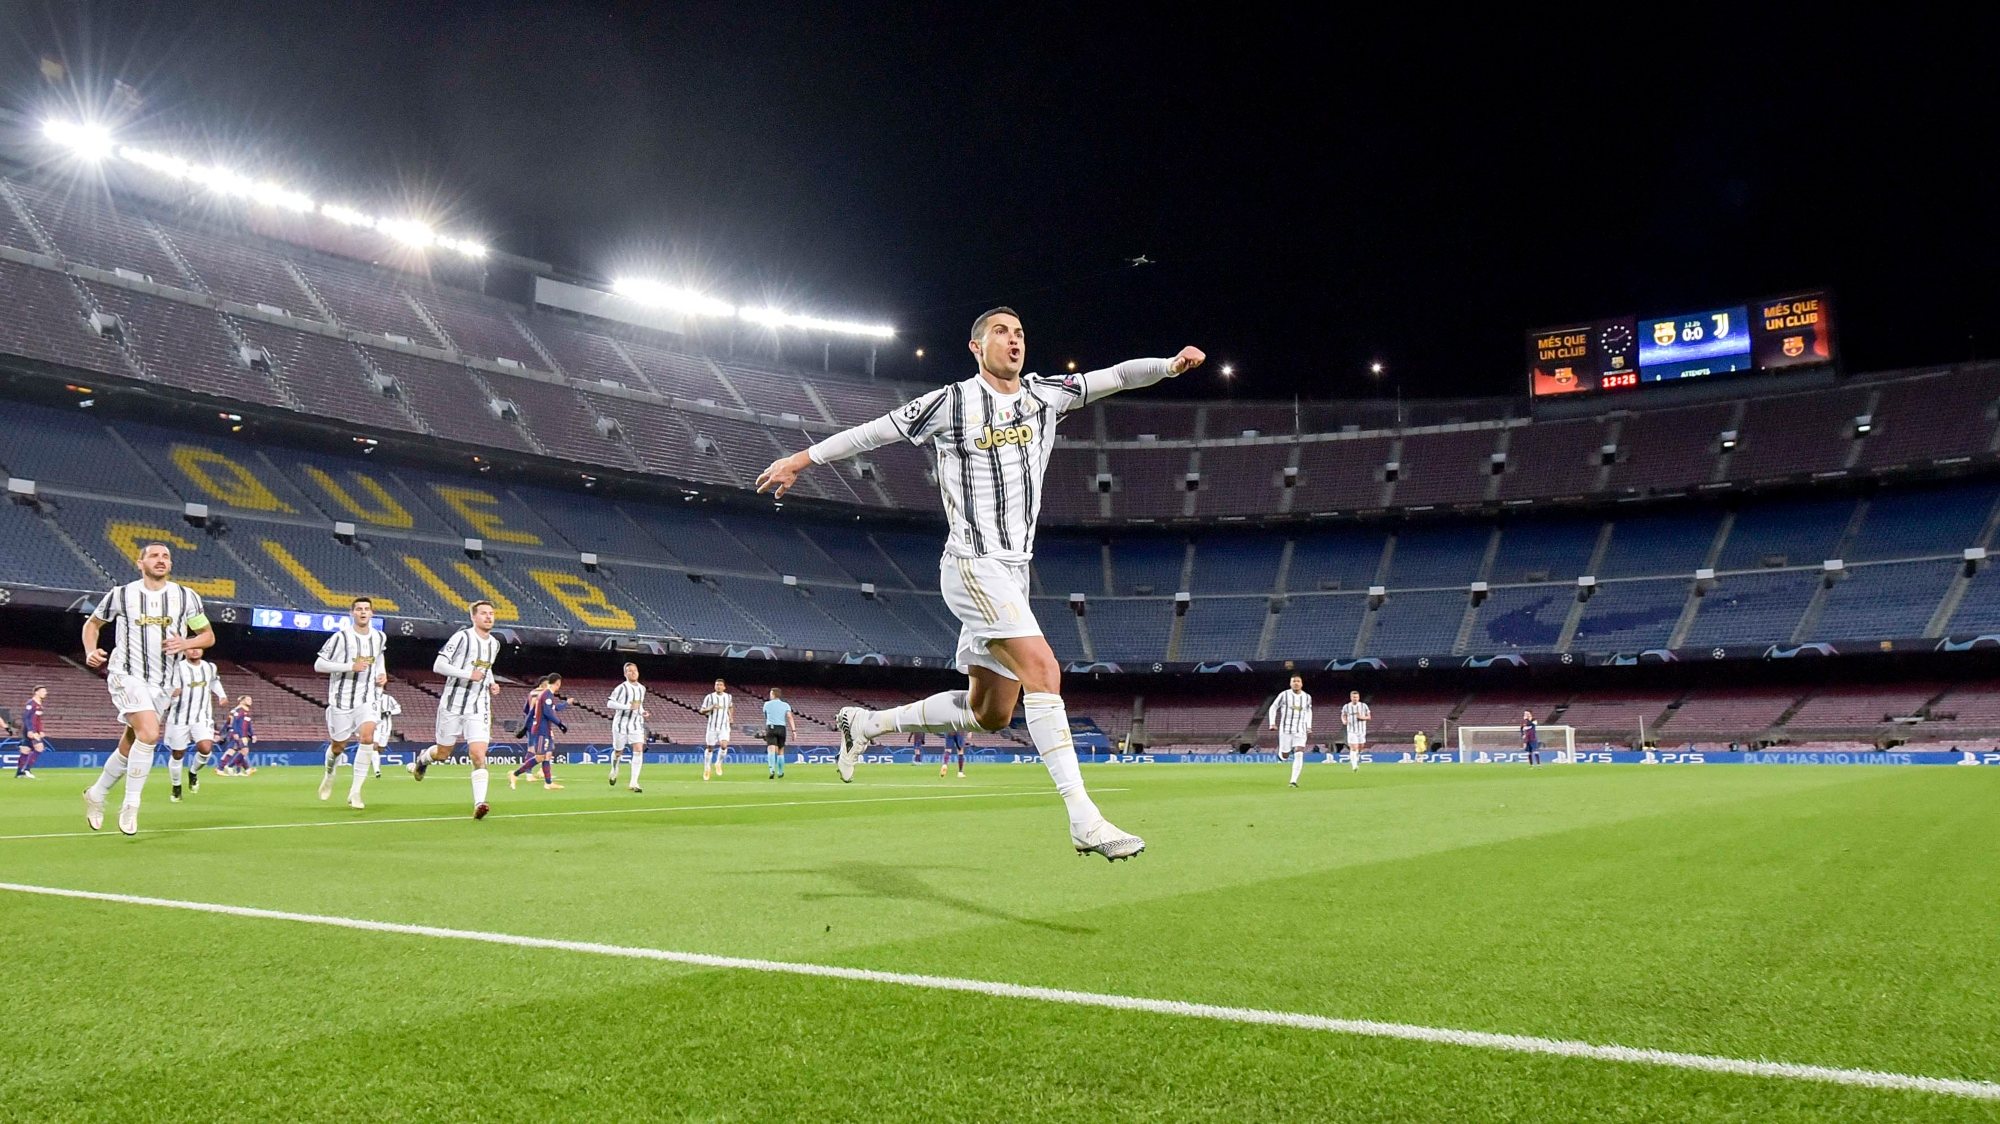 Ronaldo abriu e fechou a vitória da Juventus em Camp Nou, levando nesta altura 14 golos nos últimos 13 jogos fora frente ao Barcelona